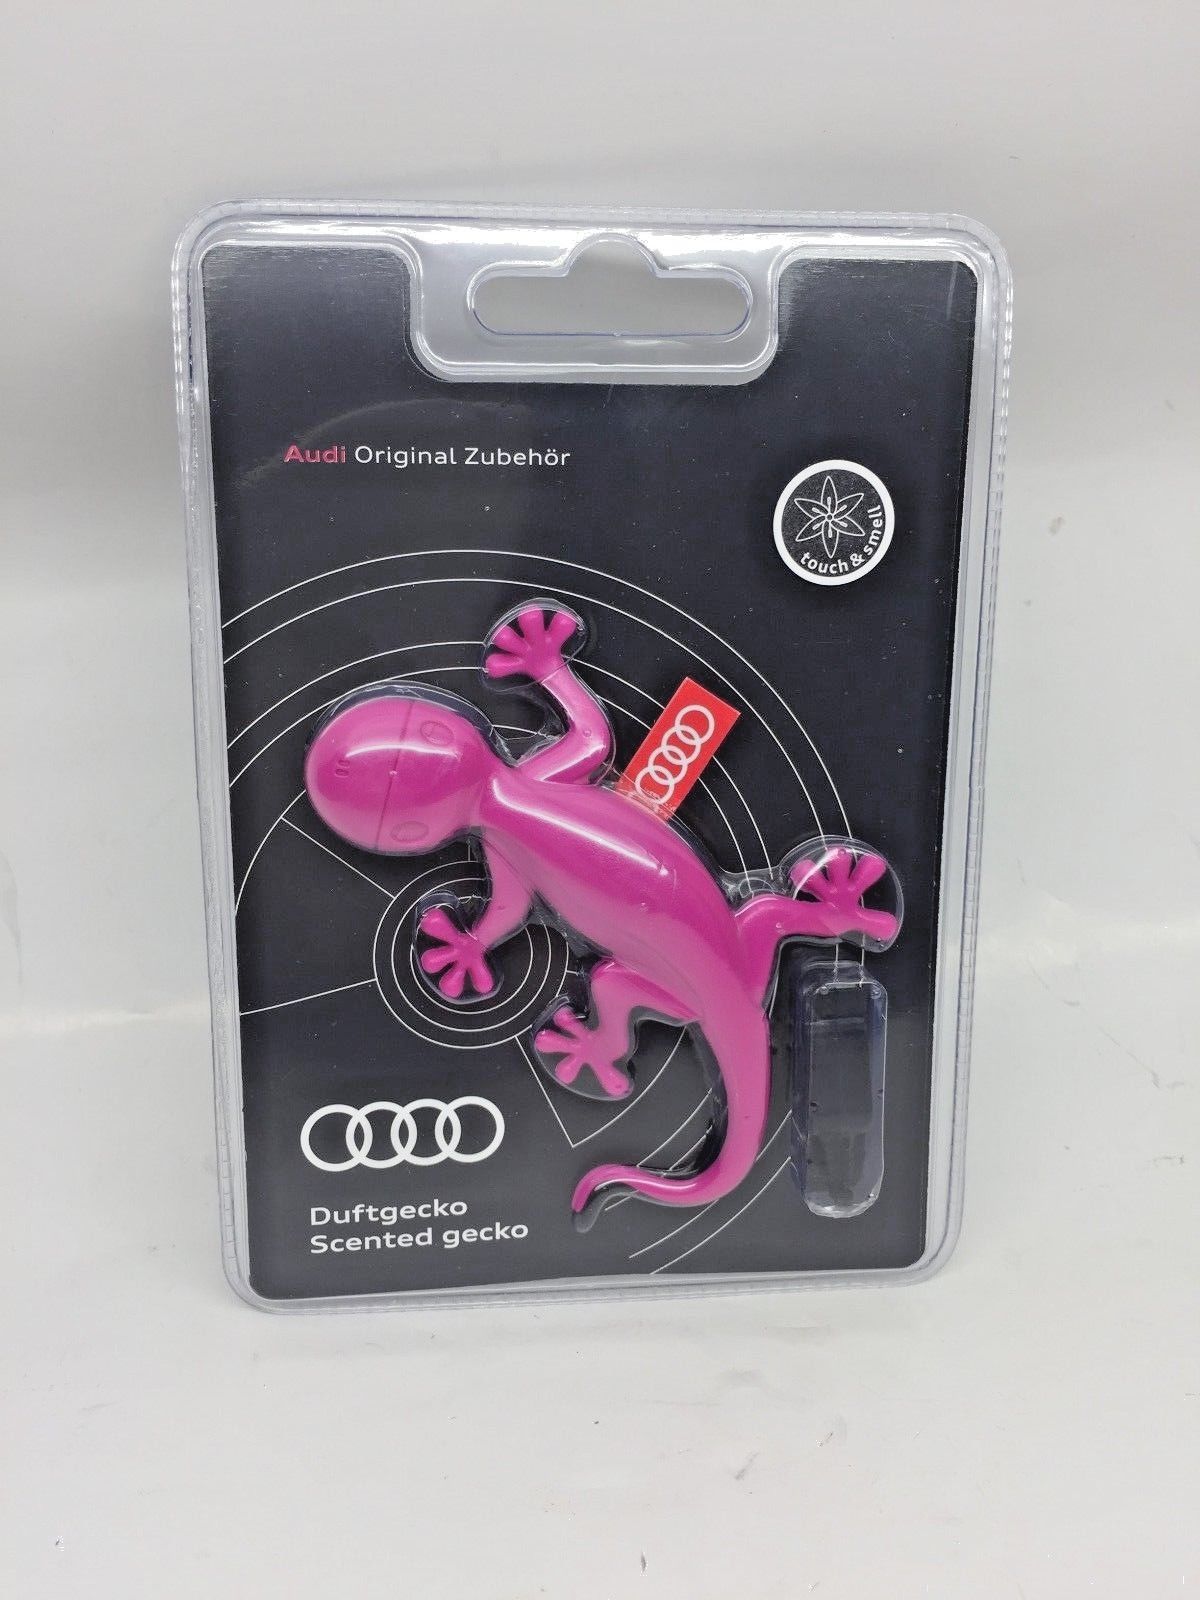 Audi Original Zubehör Duftgecko, pink, 000087009AC in Bochum